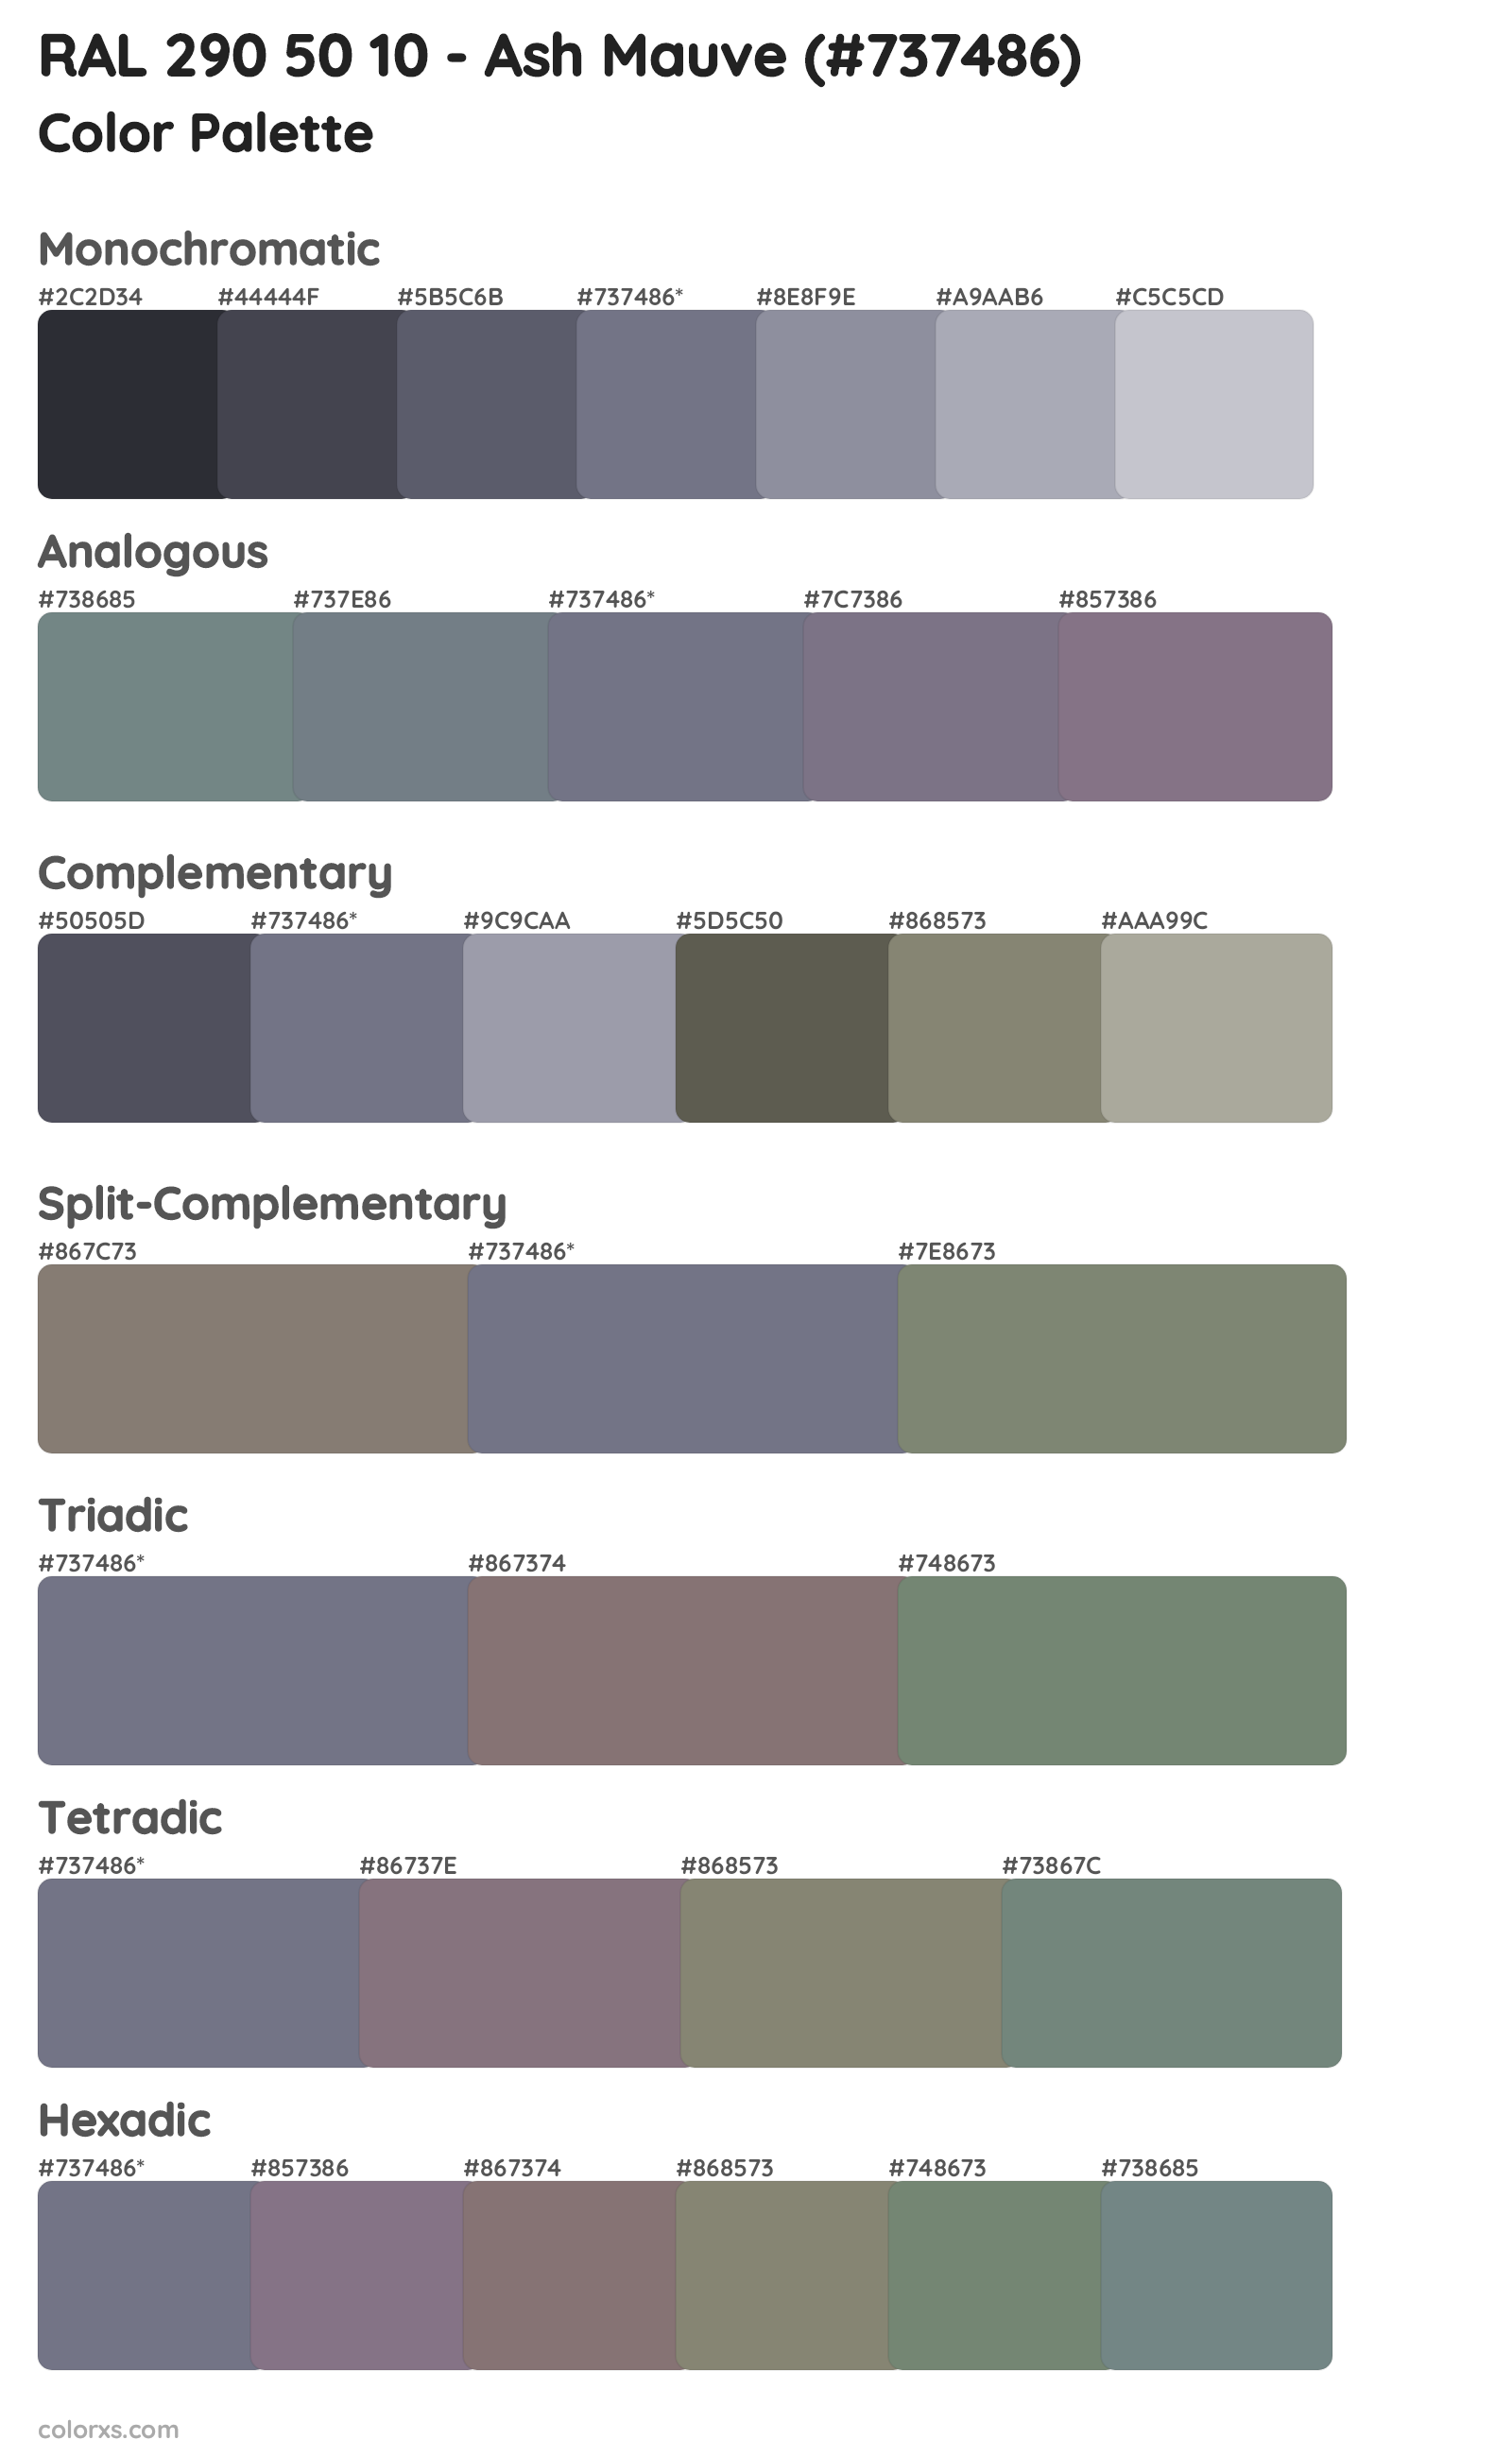 RAL 290 50 10 - Ash Mauve Color Scheme Palettes